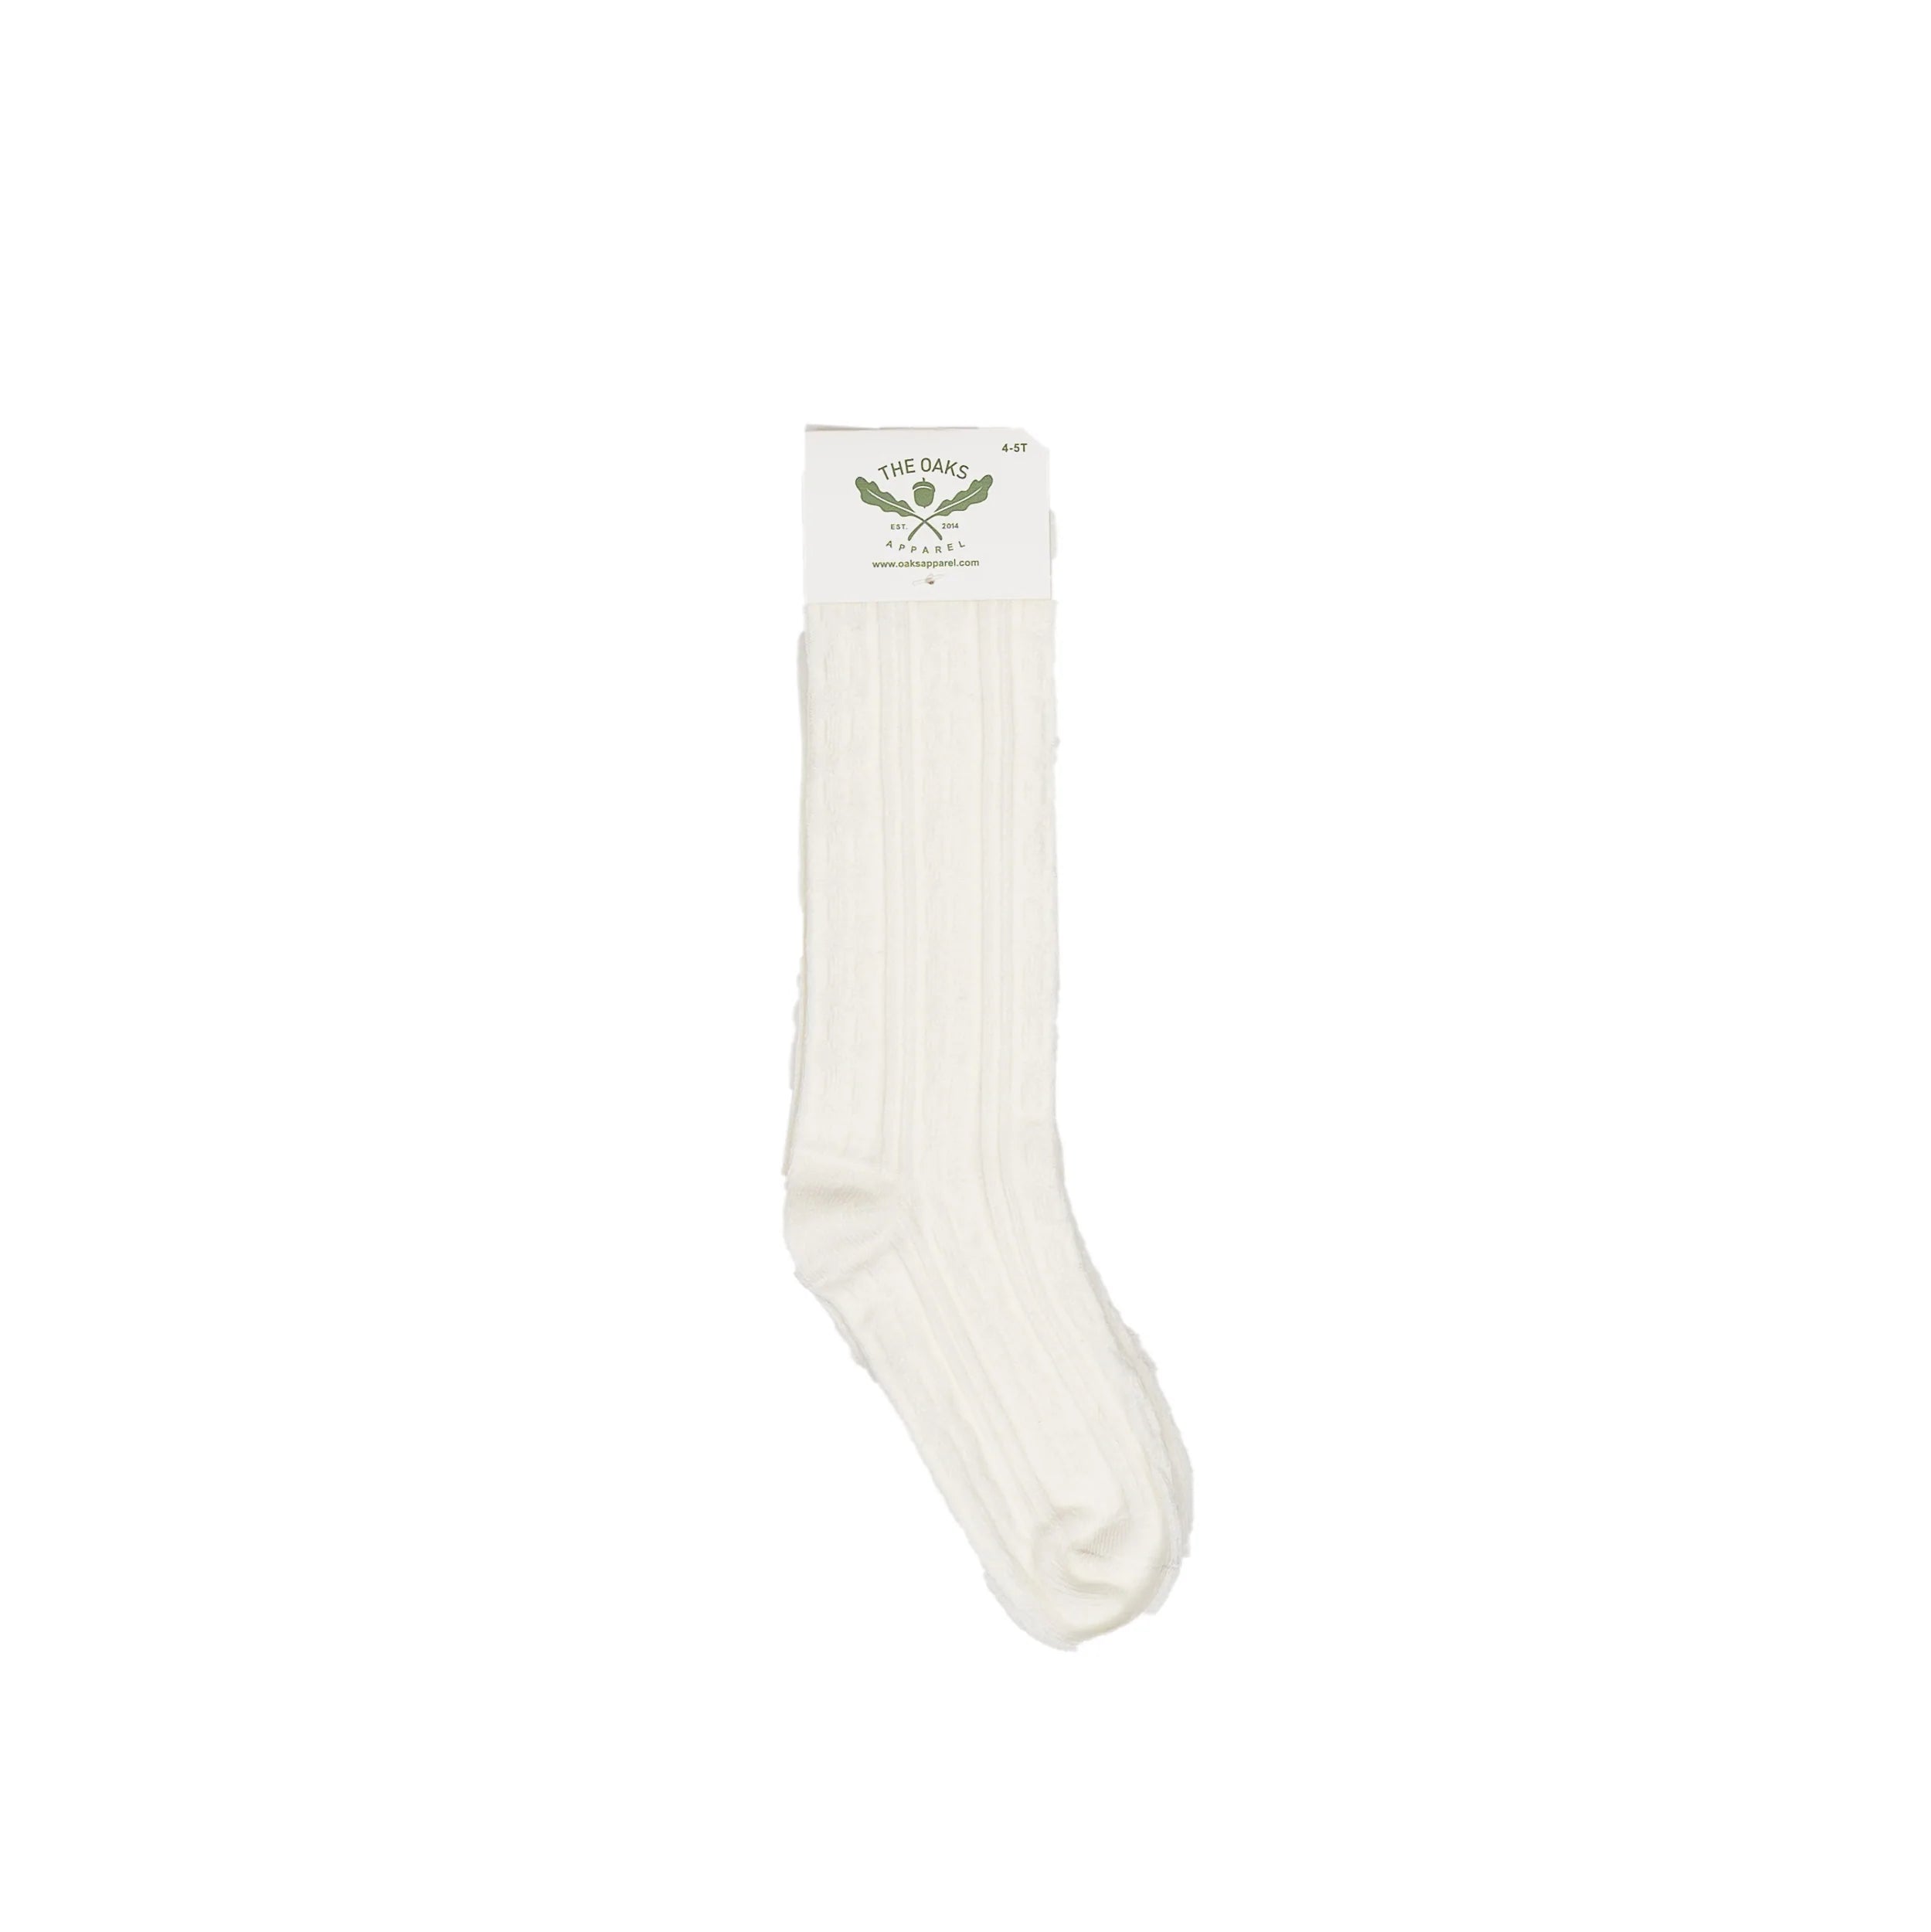 Oaks Apparel Braided Socks - White-The Oaks Apparel-Little Giant Kidz